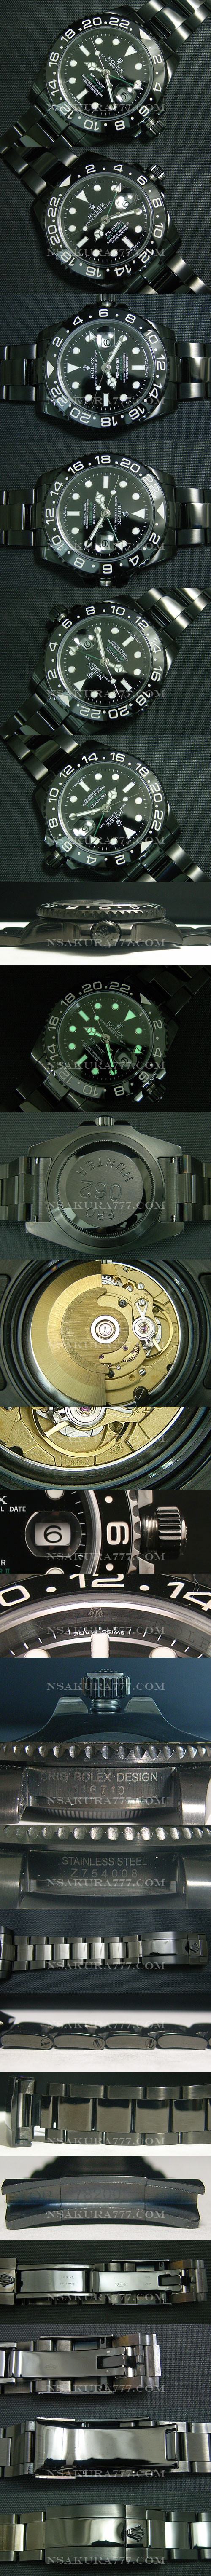 レプリカ時計ロレックス プロハンター GMTマスターⅡAsian 2836-2 ムーブメント搭載 - ウインドウを閉じる